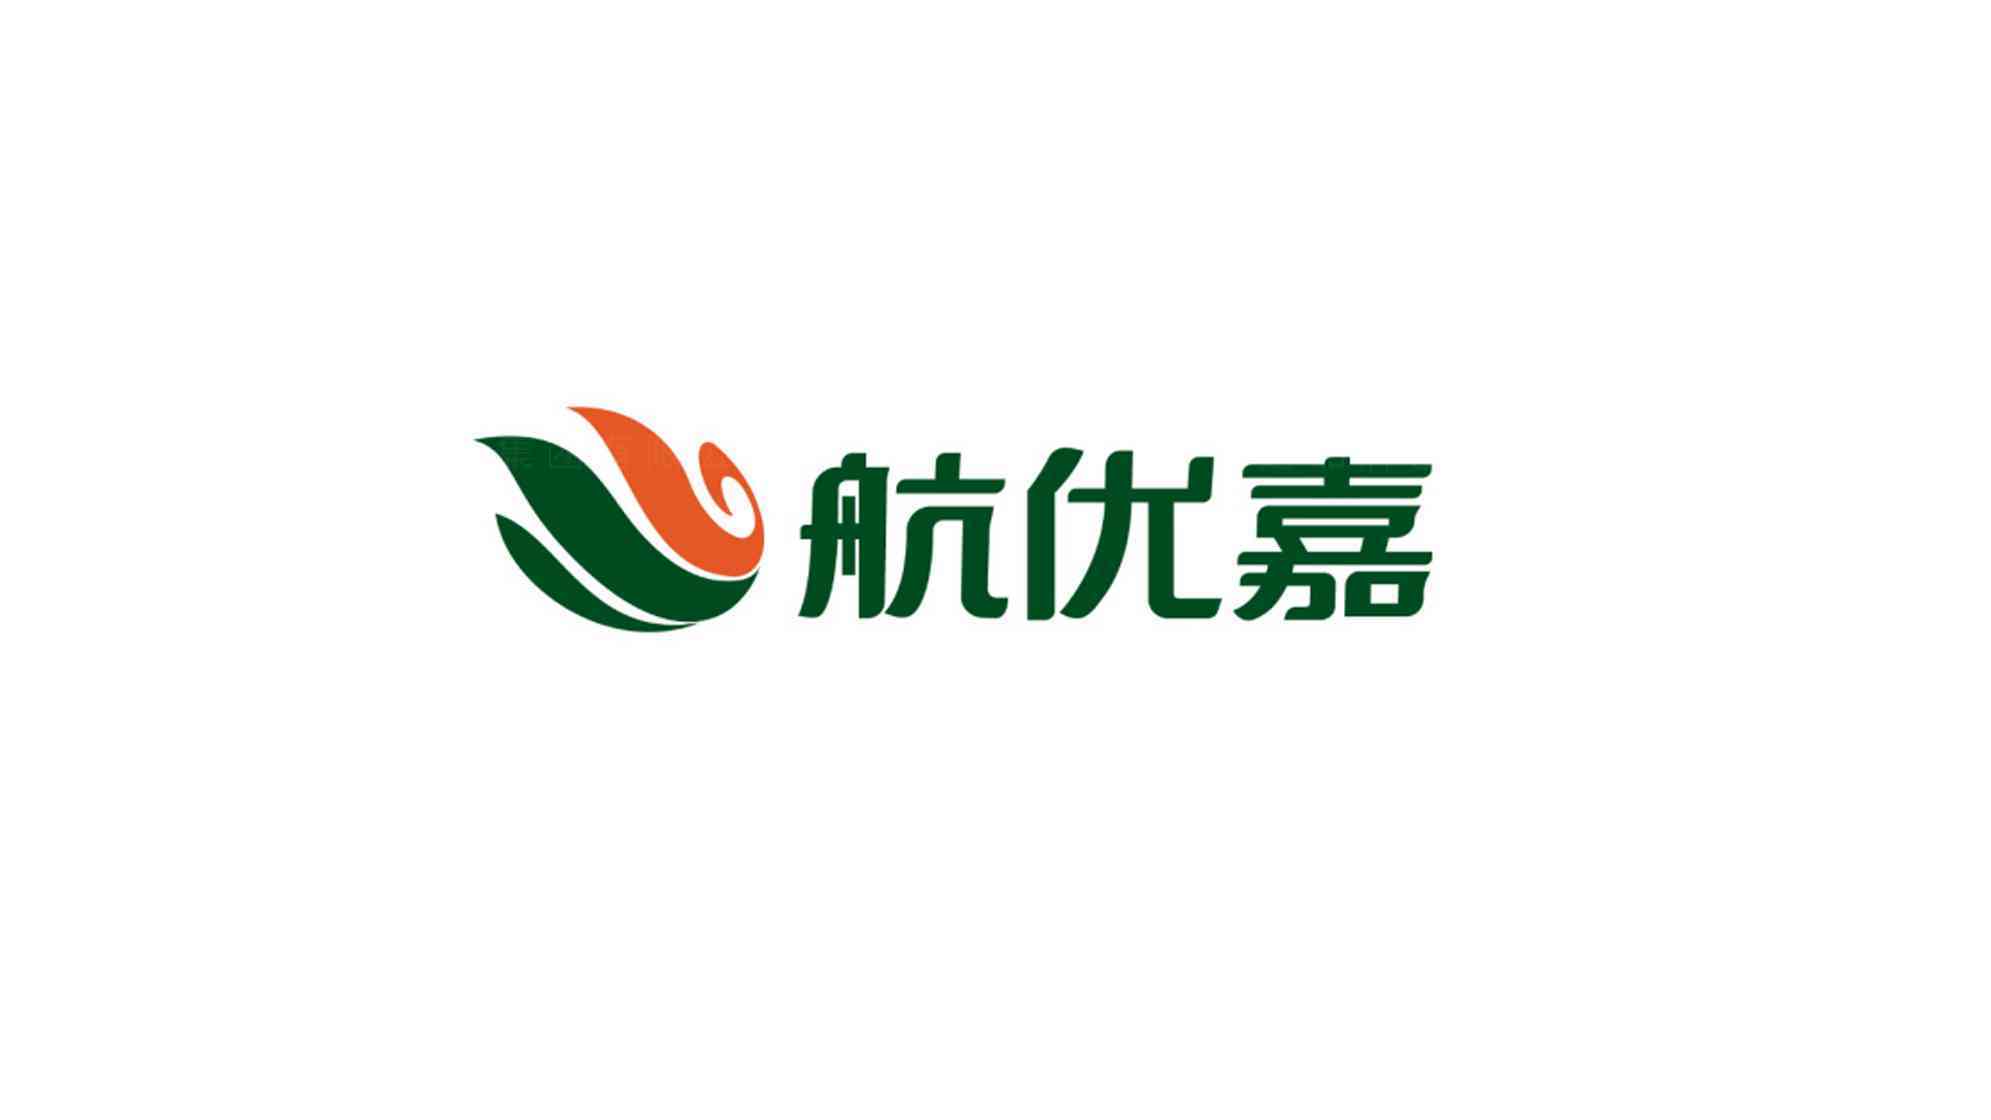 中國航油石油公司logo設計圖片素材